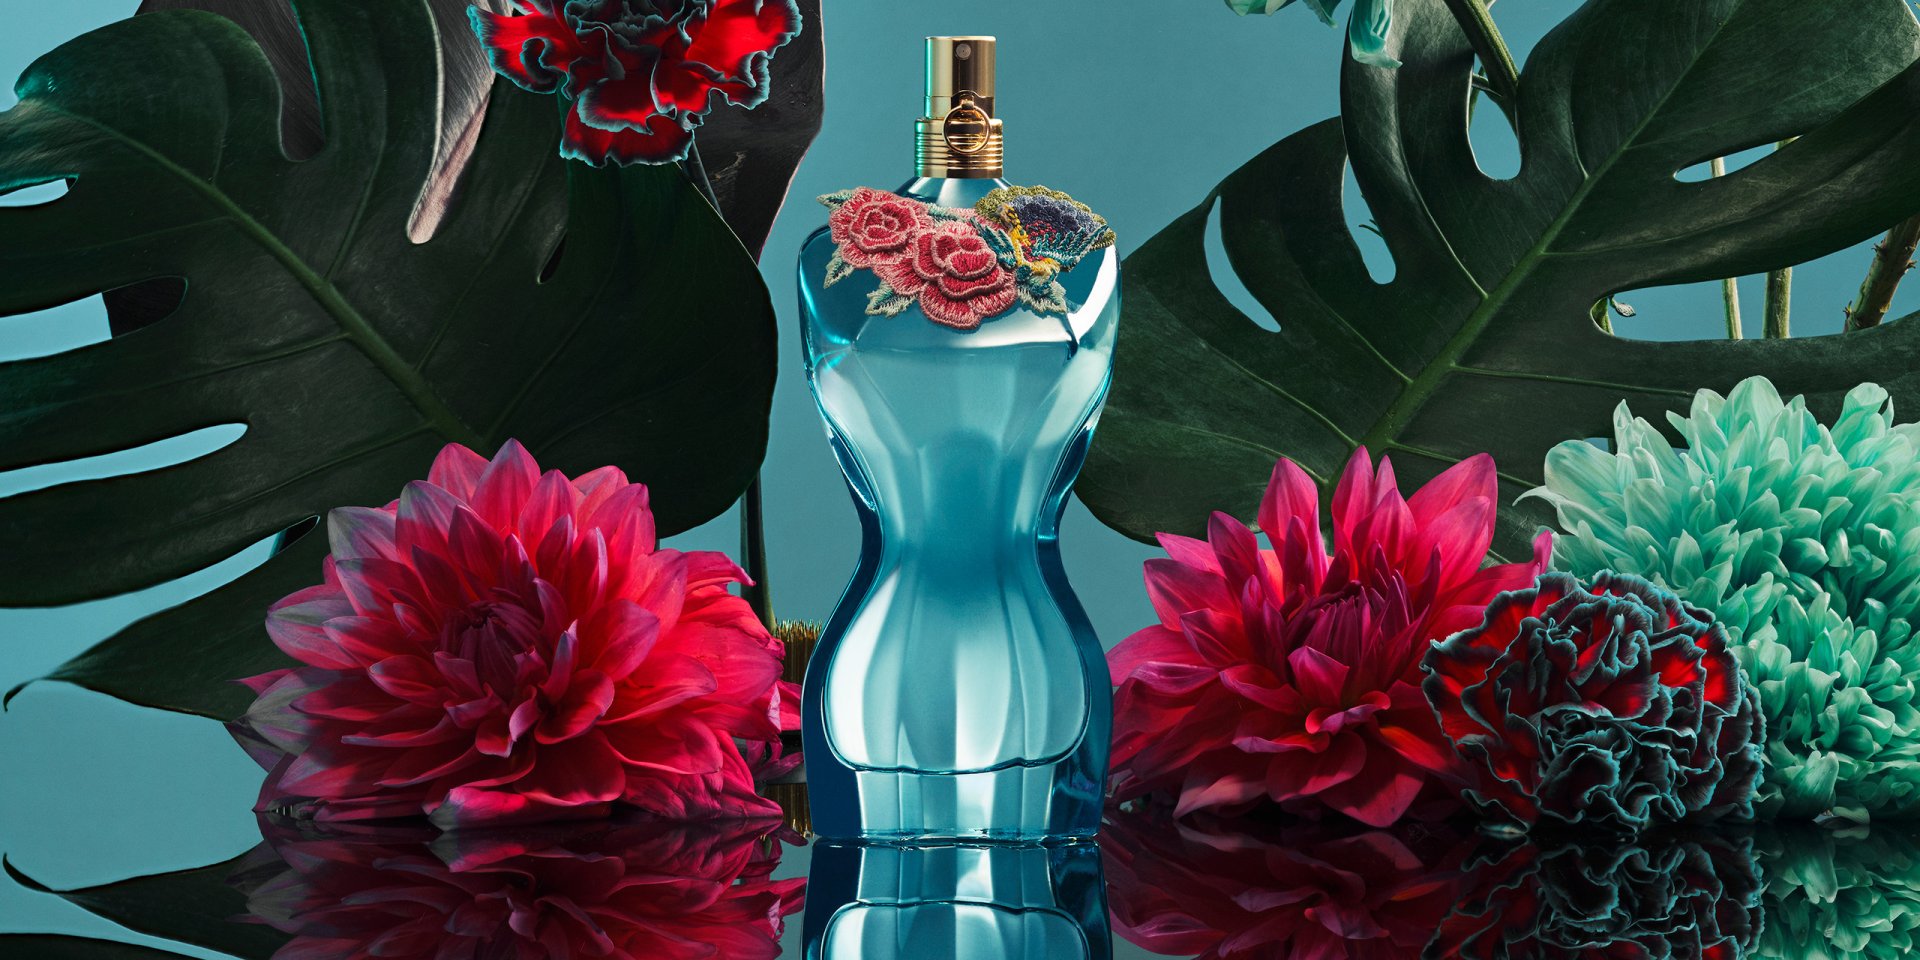 bottle-la-belle-paradise-garden-eau-de-parfum-jean-paul-gaultier